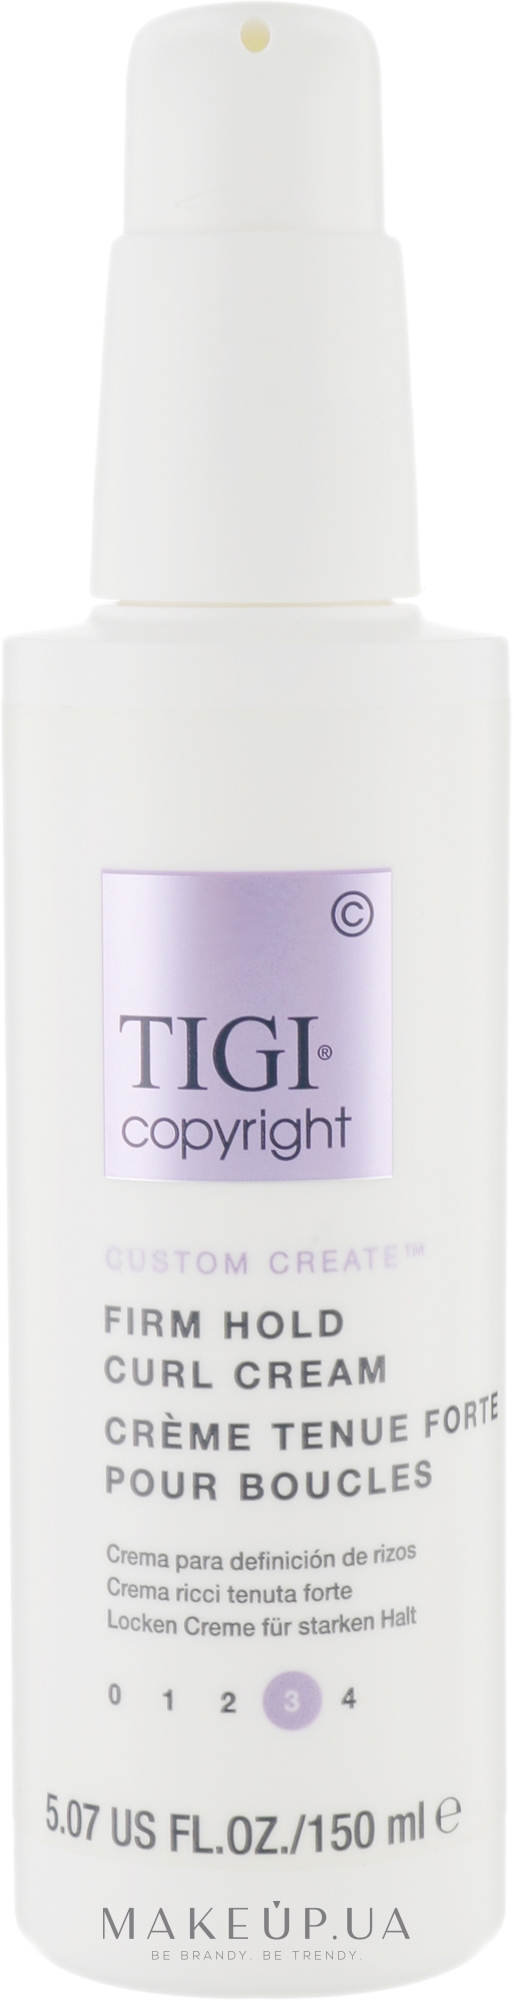 Крем для кудрей сильной фиксации - Tigi Copyright Firm Hold Curl Cream — фото 150ml